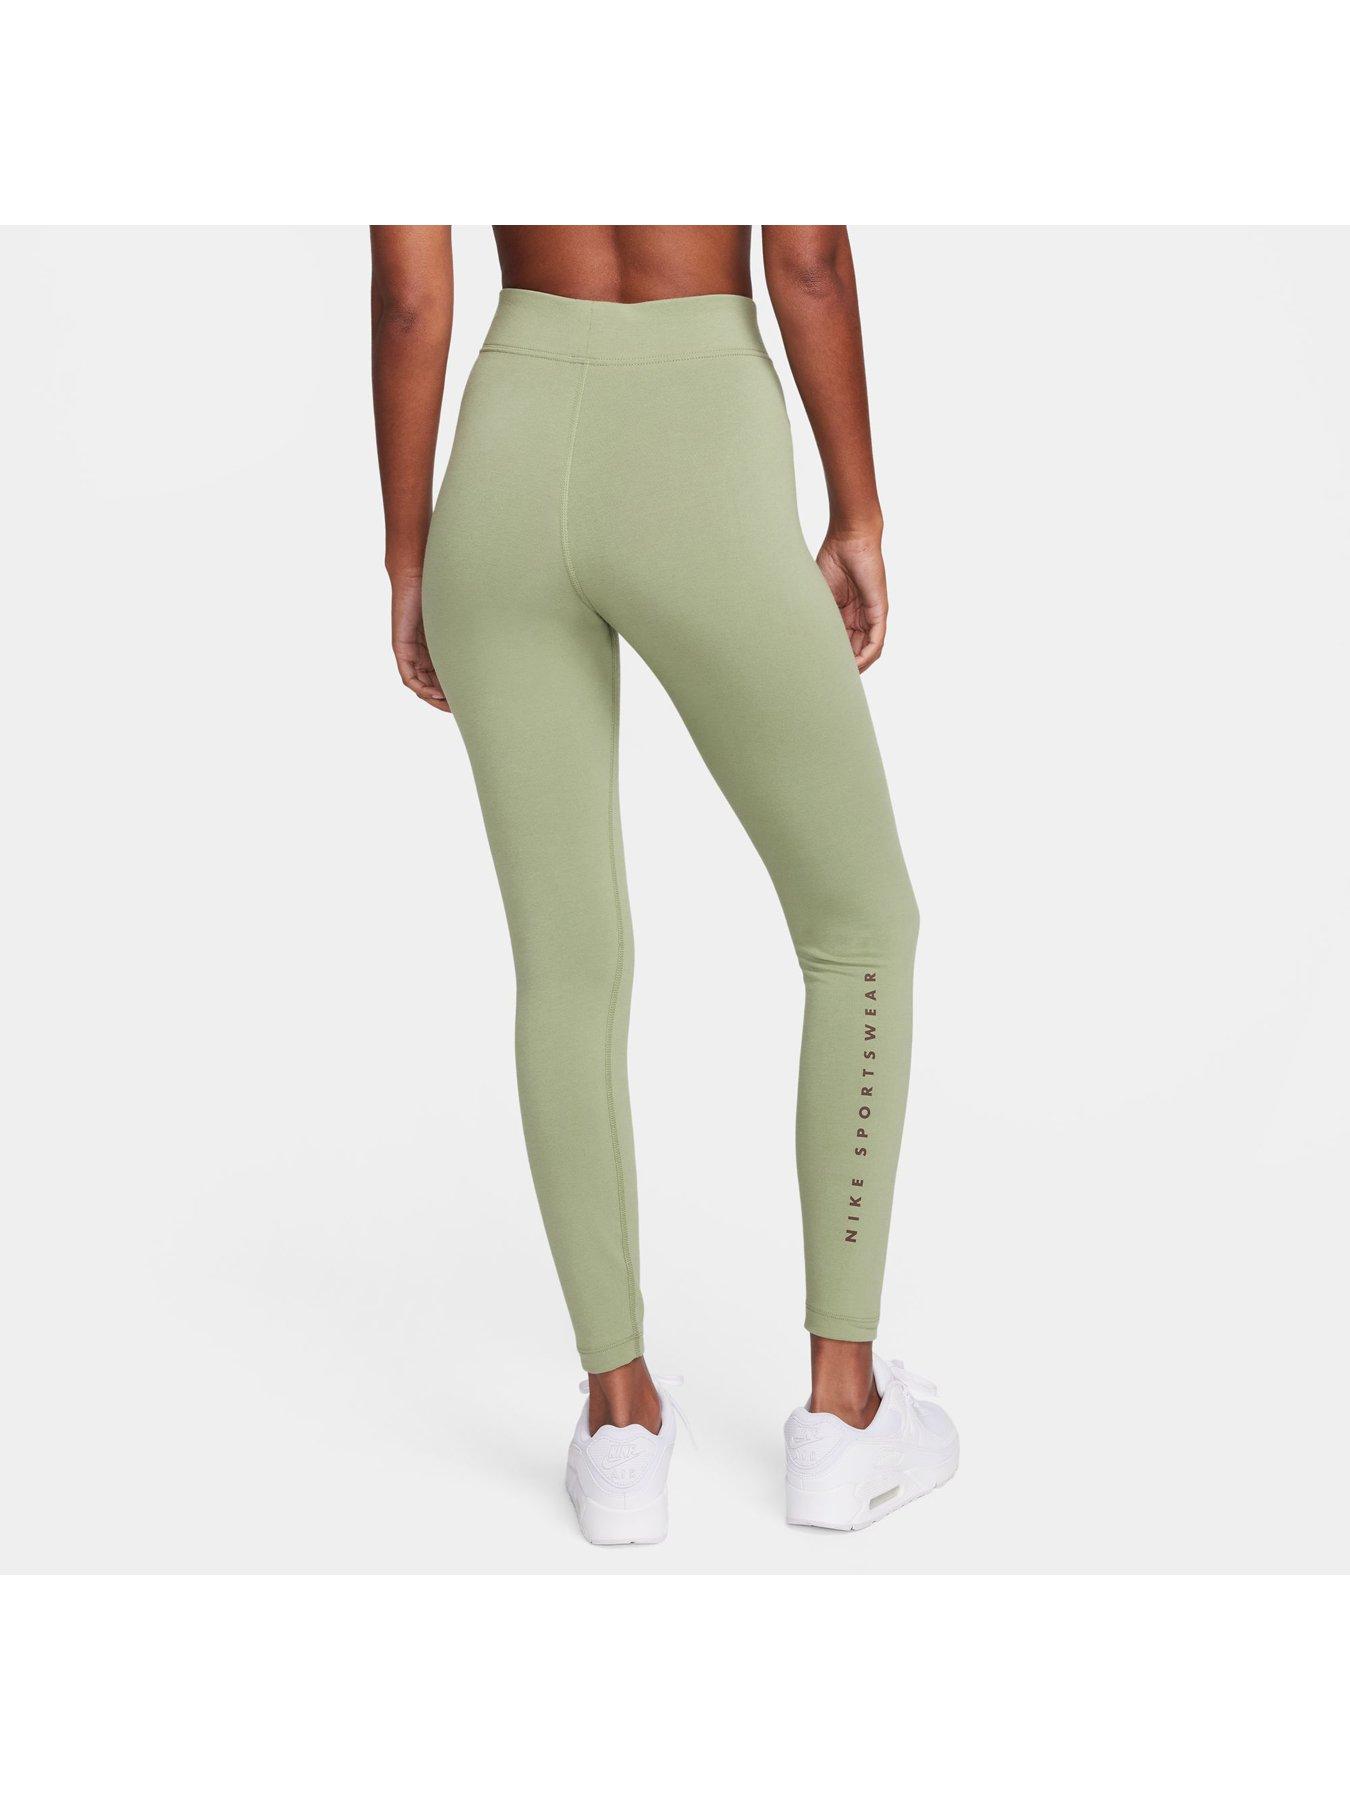 Nike Women's High-waisted Full-length Graphic Leggings - Green